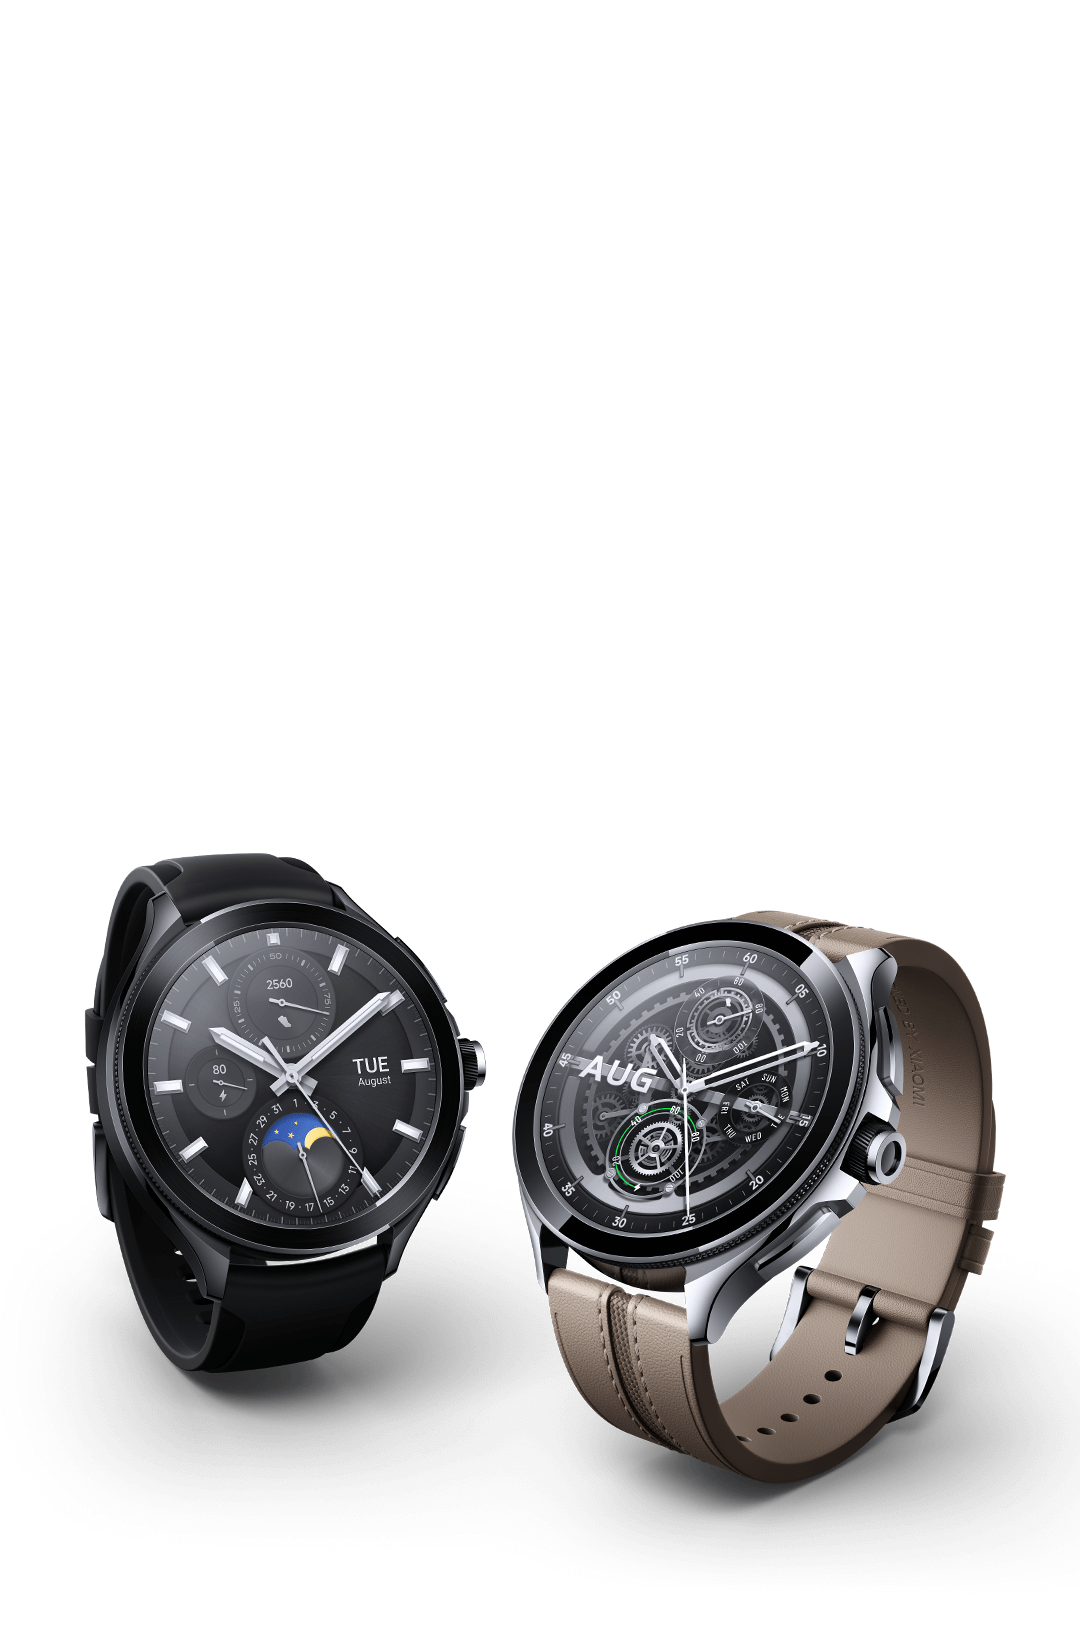 Las mejores ofertas en Caja de acero inoxidable Huawei Watch desbloqueado  Relojes inteligentes